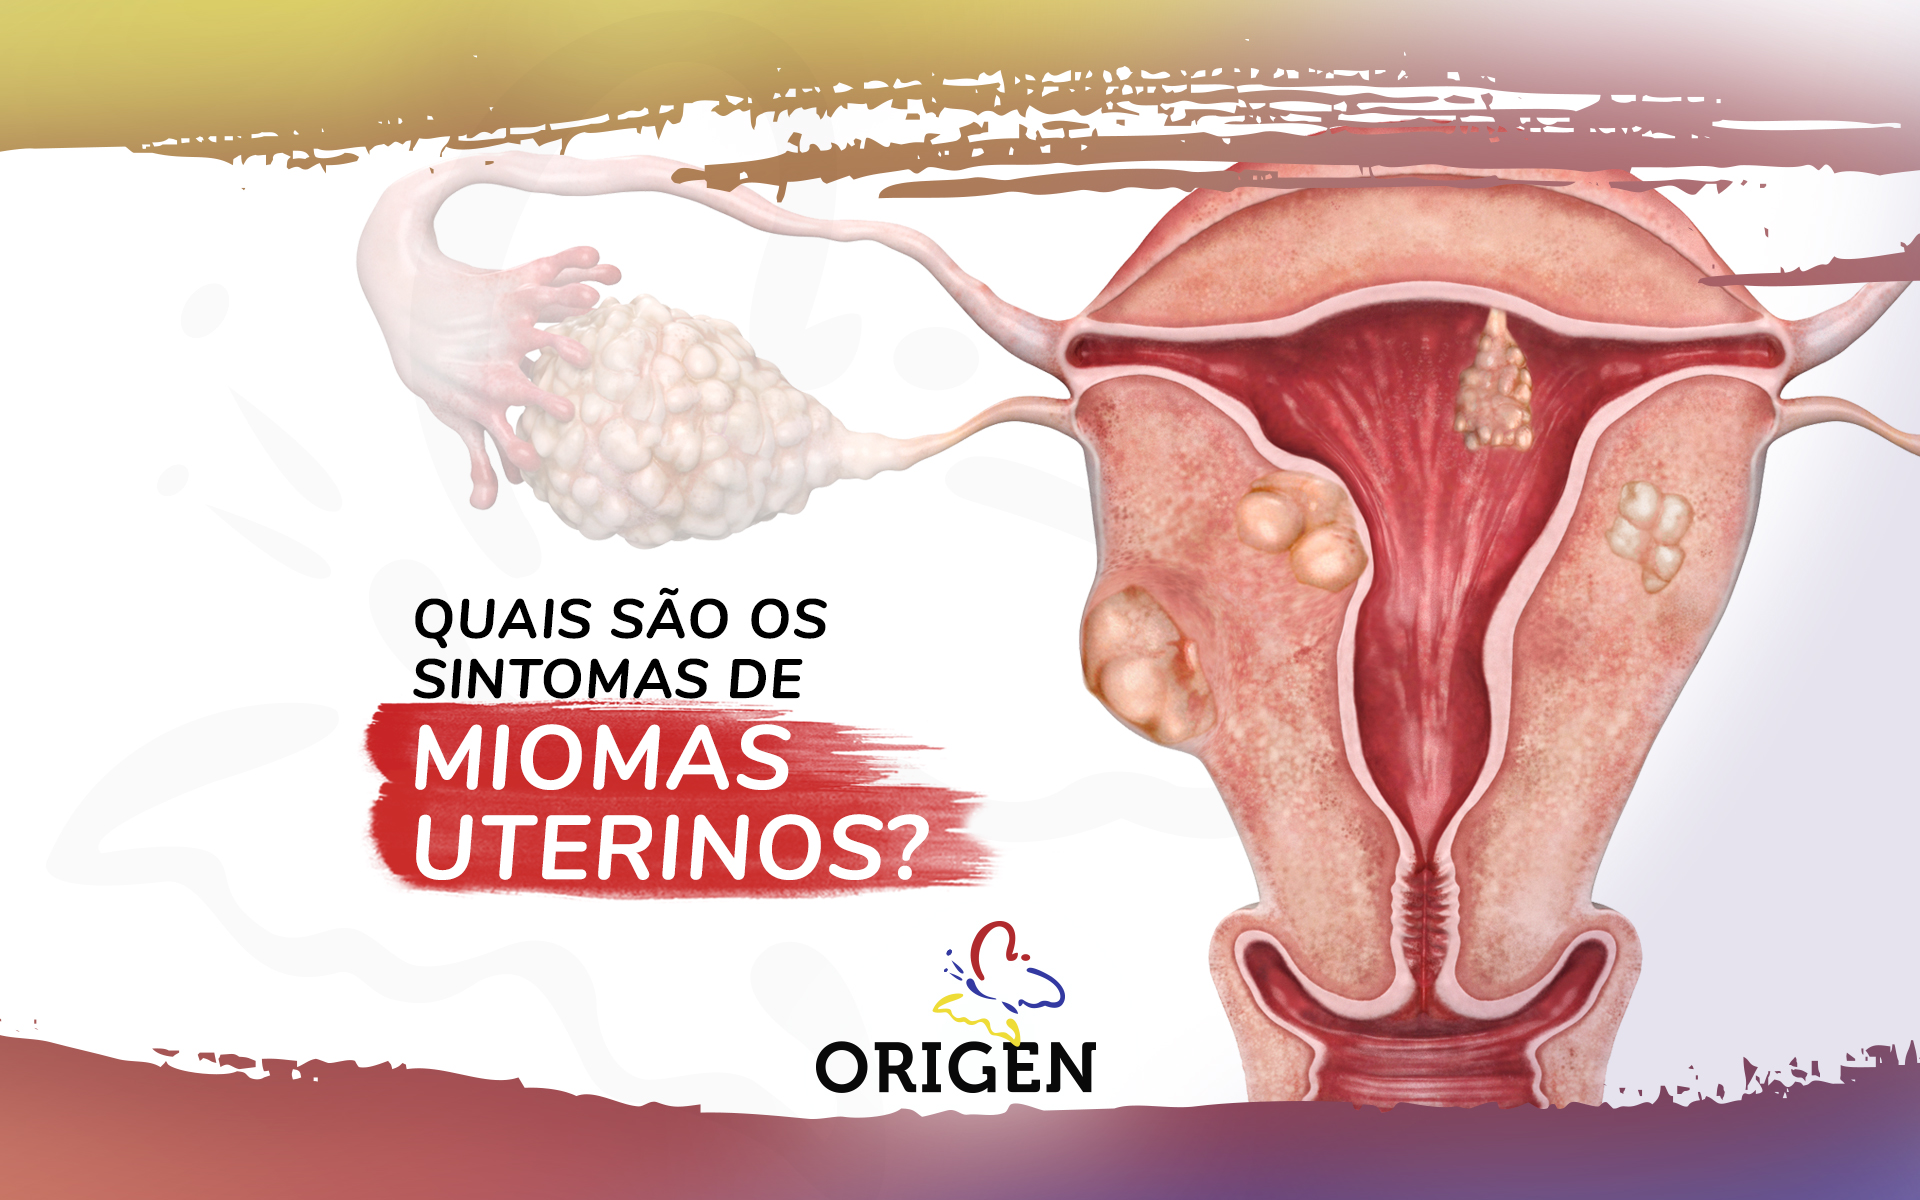 Quais são os sintomas de miomas uterinos?